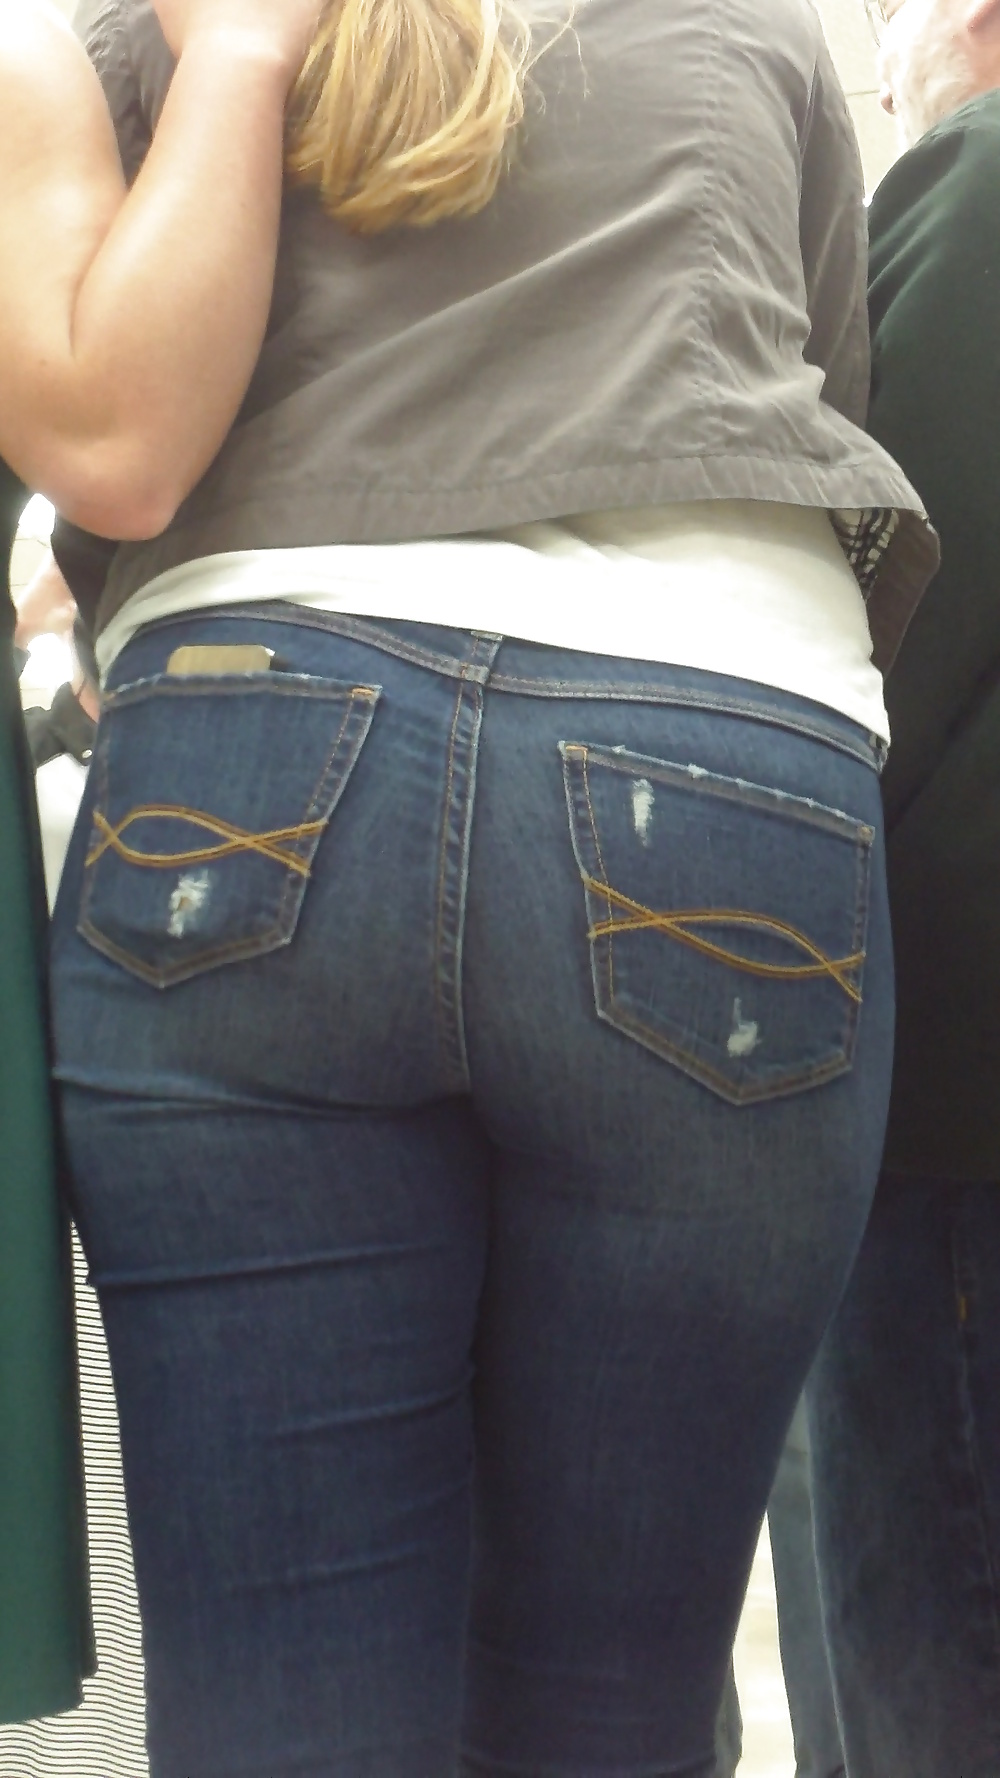 Popular teen girls ass & butt in jeans part 3 #25399623